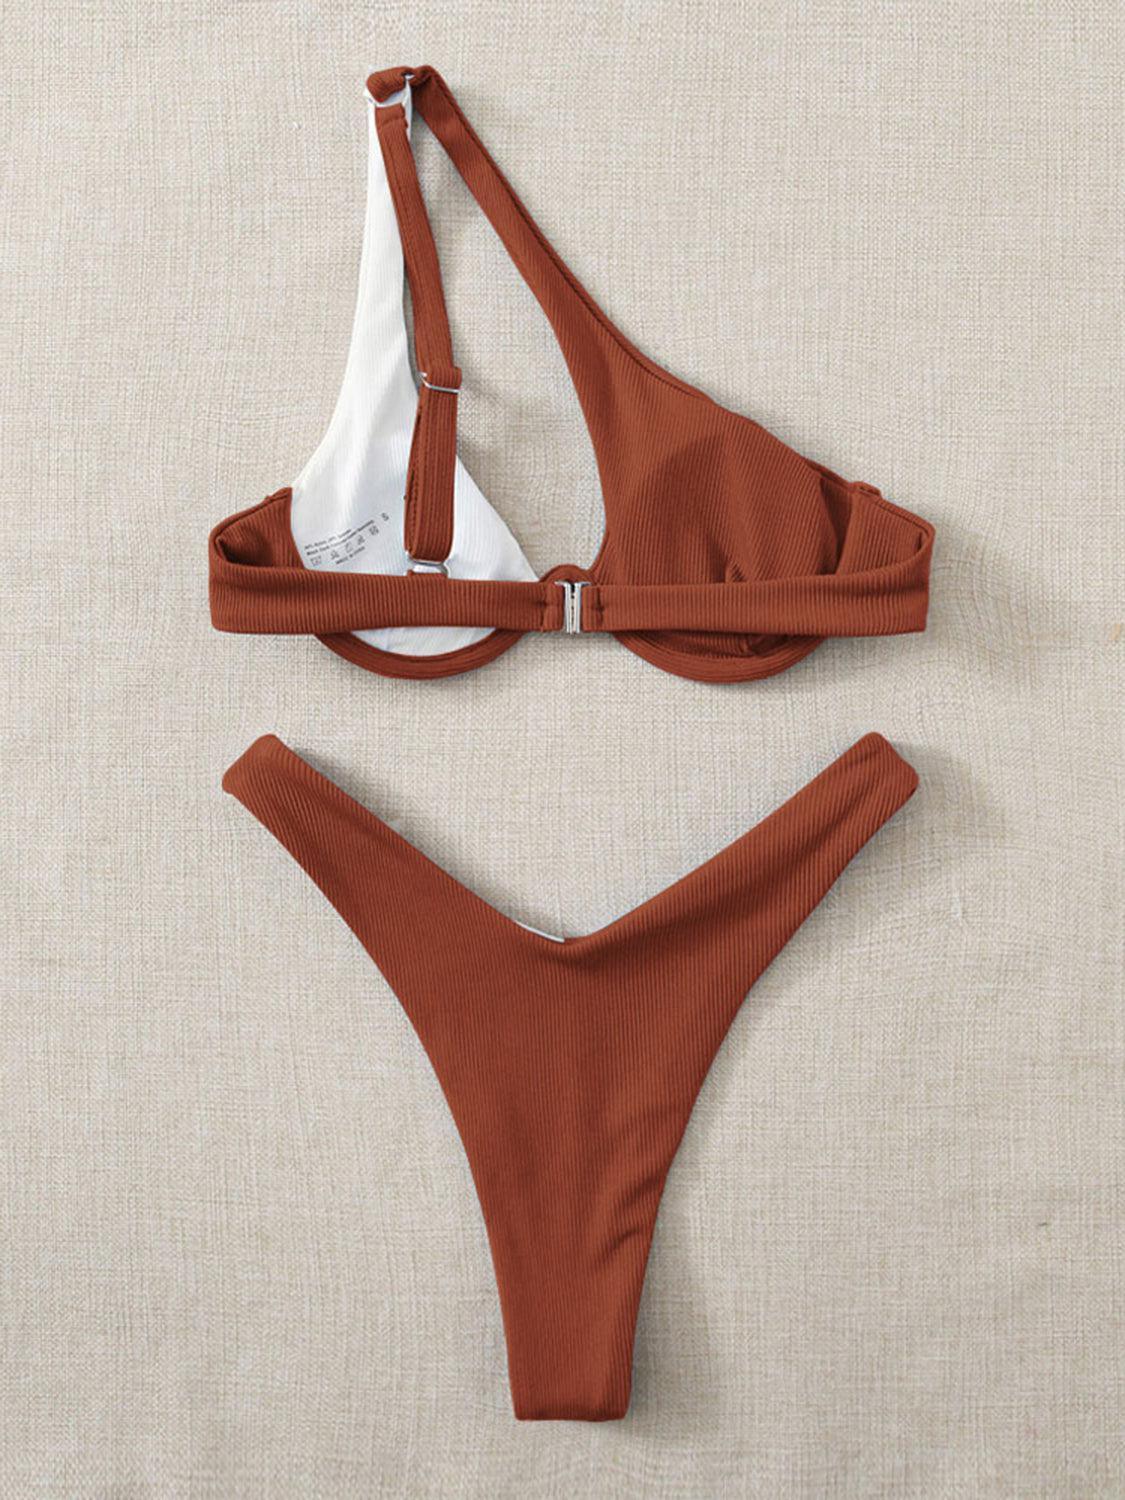 a women's bikini top and bottom in brown